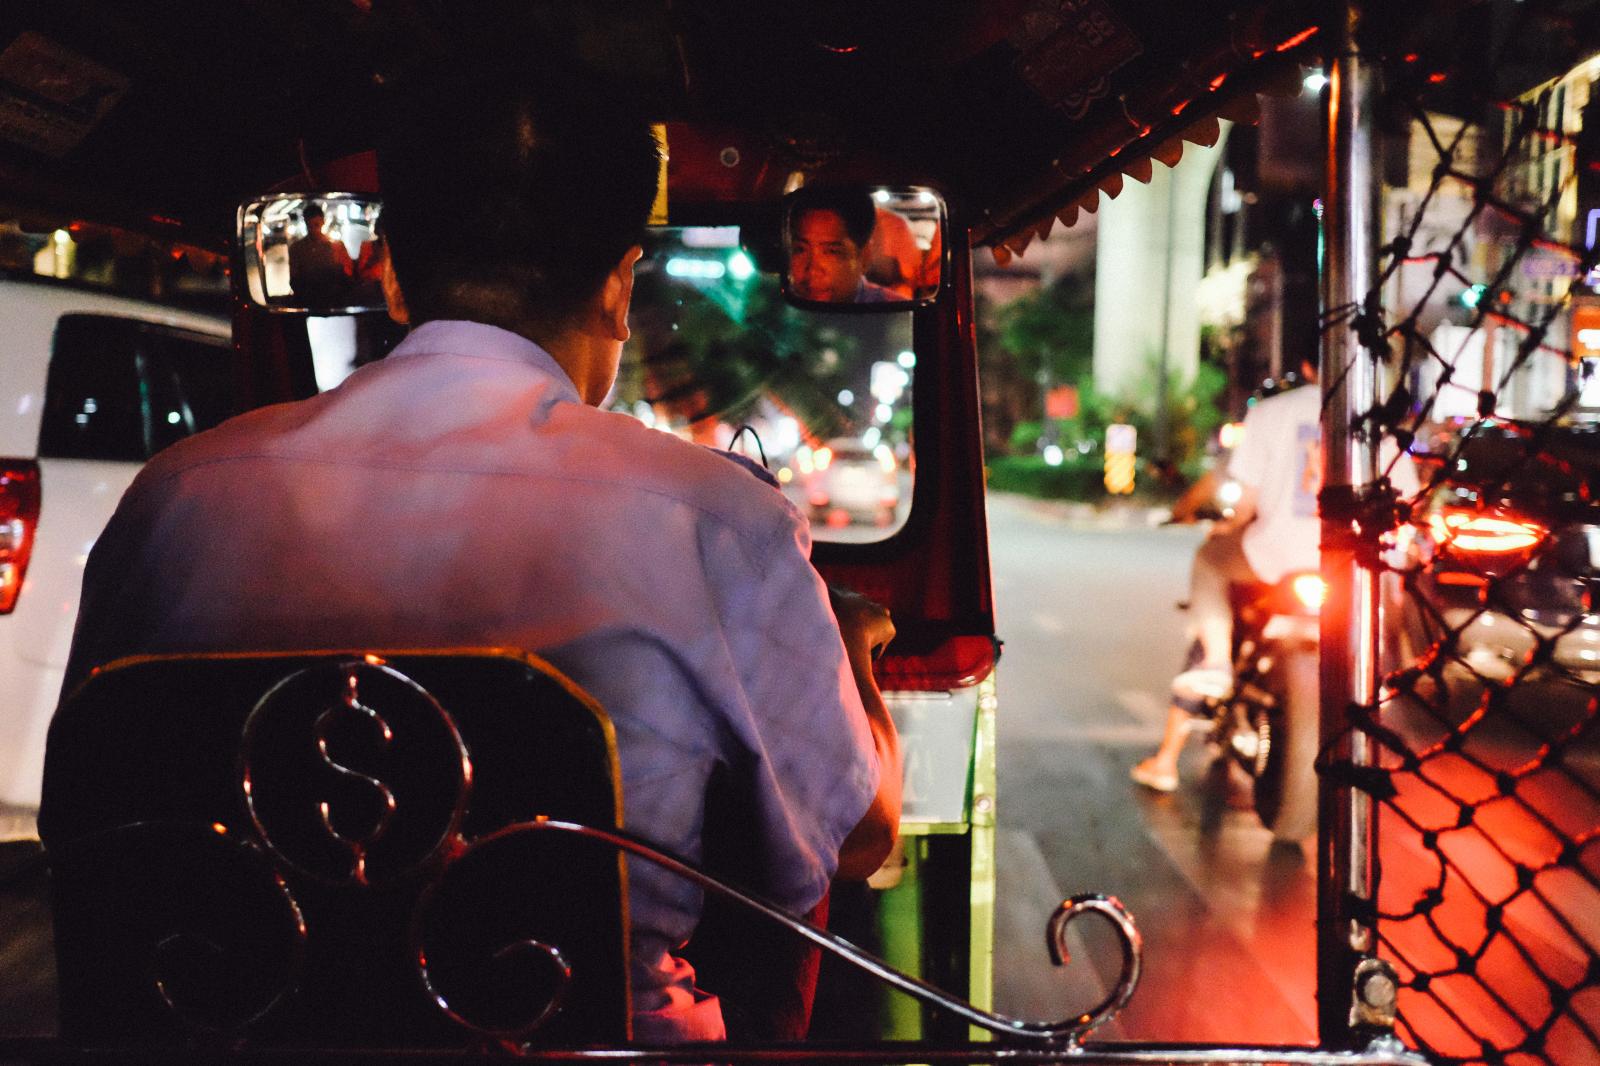 Taxi driver, Bangkok | Buy this image